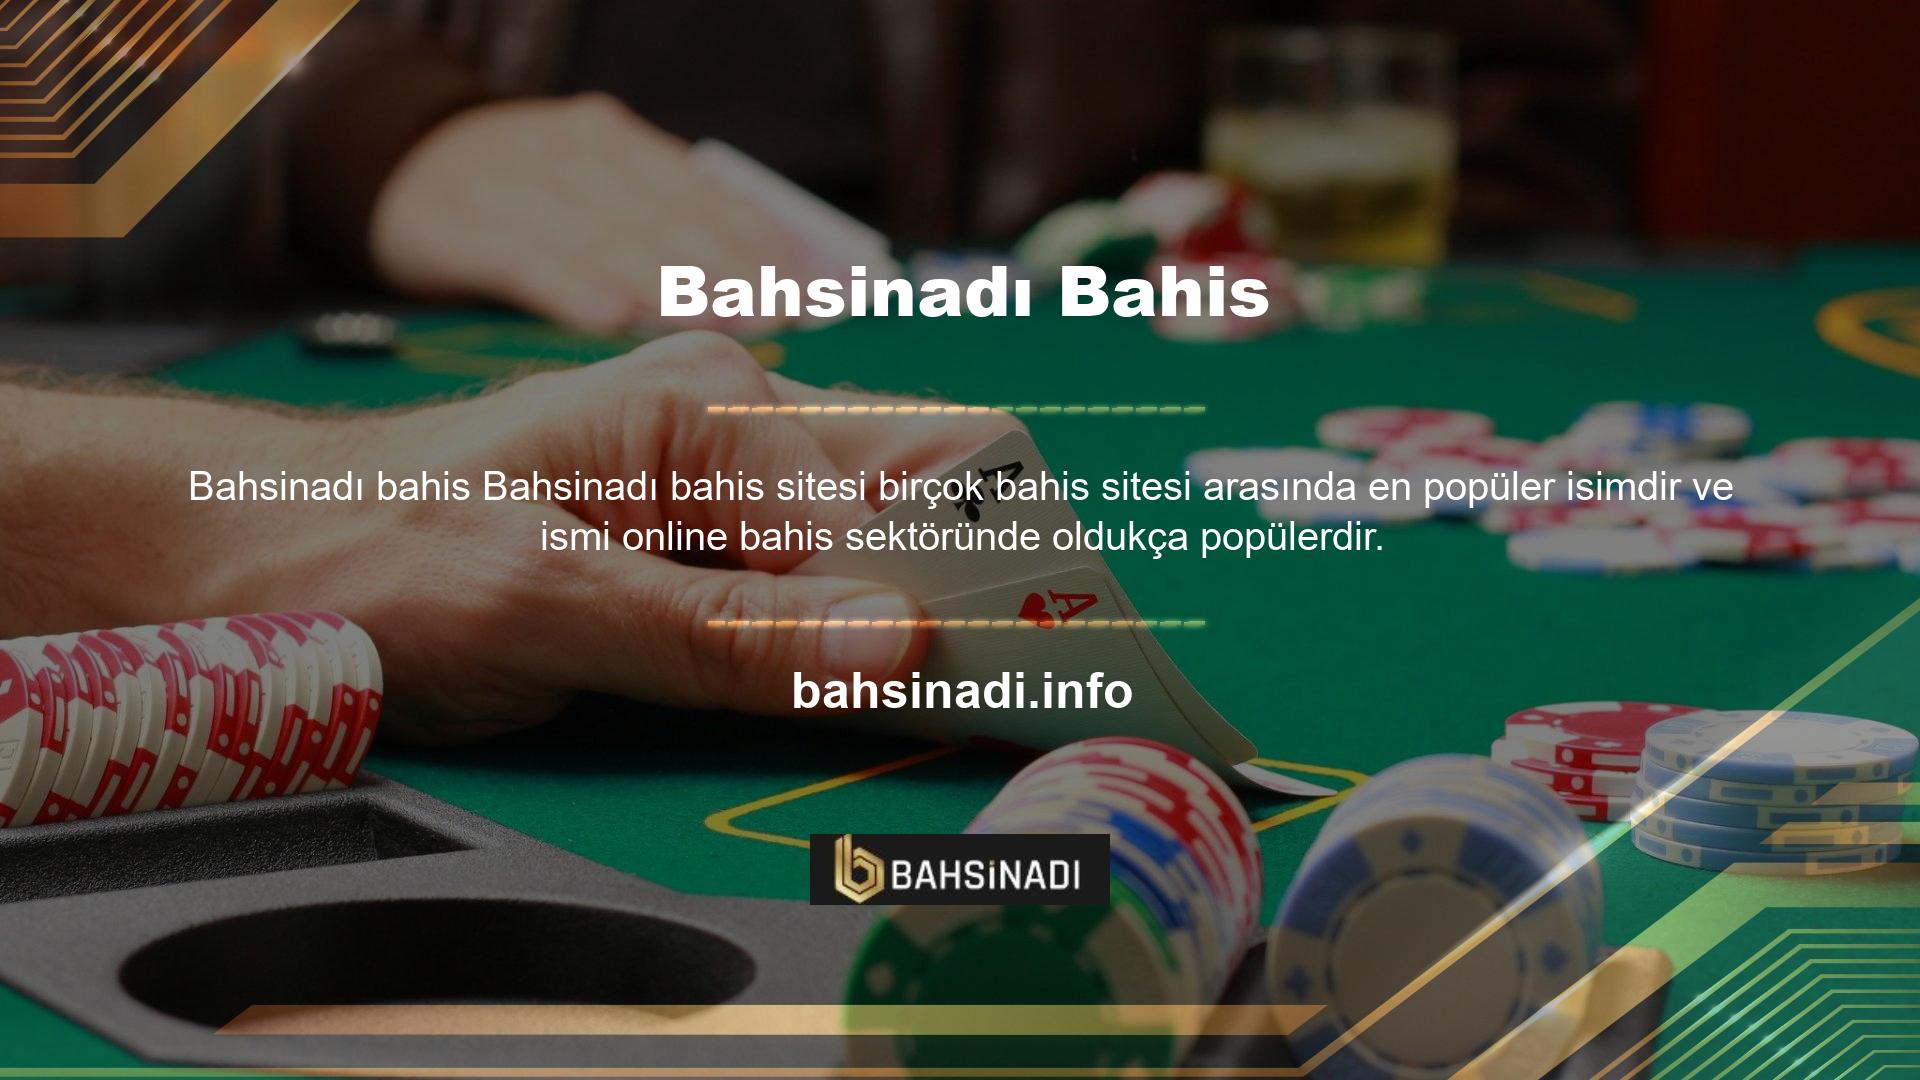 Bahsinadı casino sitesindeki fırsatlardan yararlanmak için sitenin ana sayfasında yer alan giriş butonuna tıklayarak üyelik işlemini tamamladıktan sonra sitedeki fırsatlardan yararlanabilir ve ek gelir elde edebilirsiniz